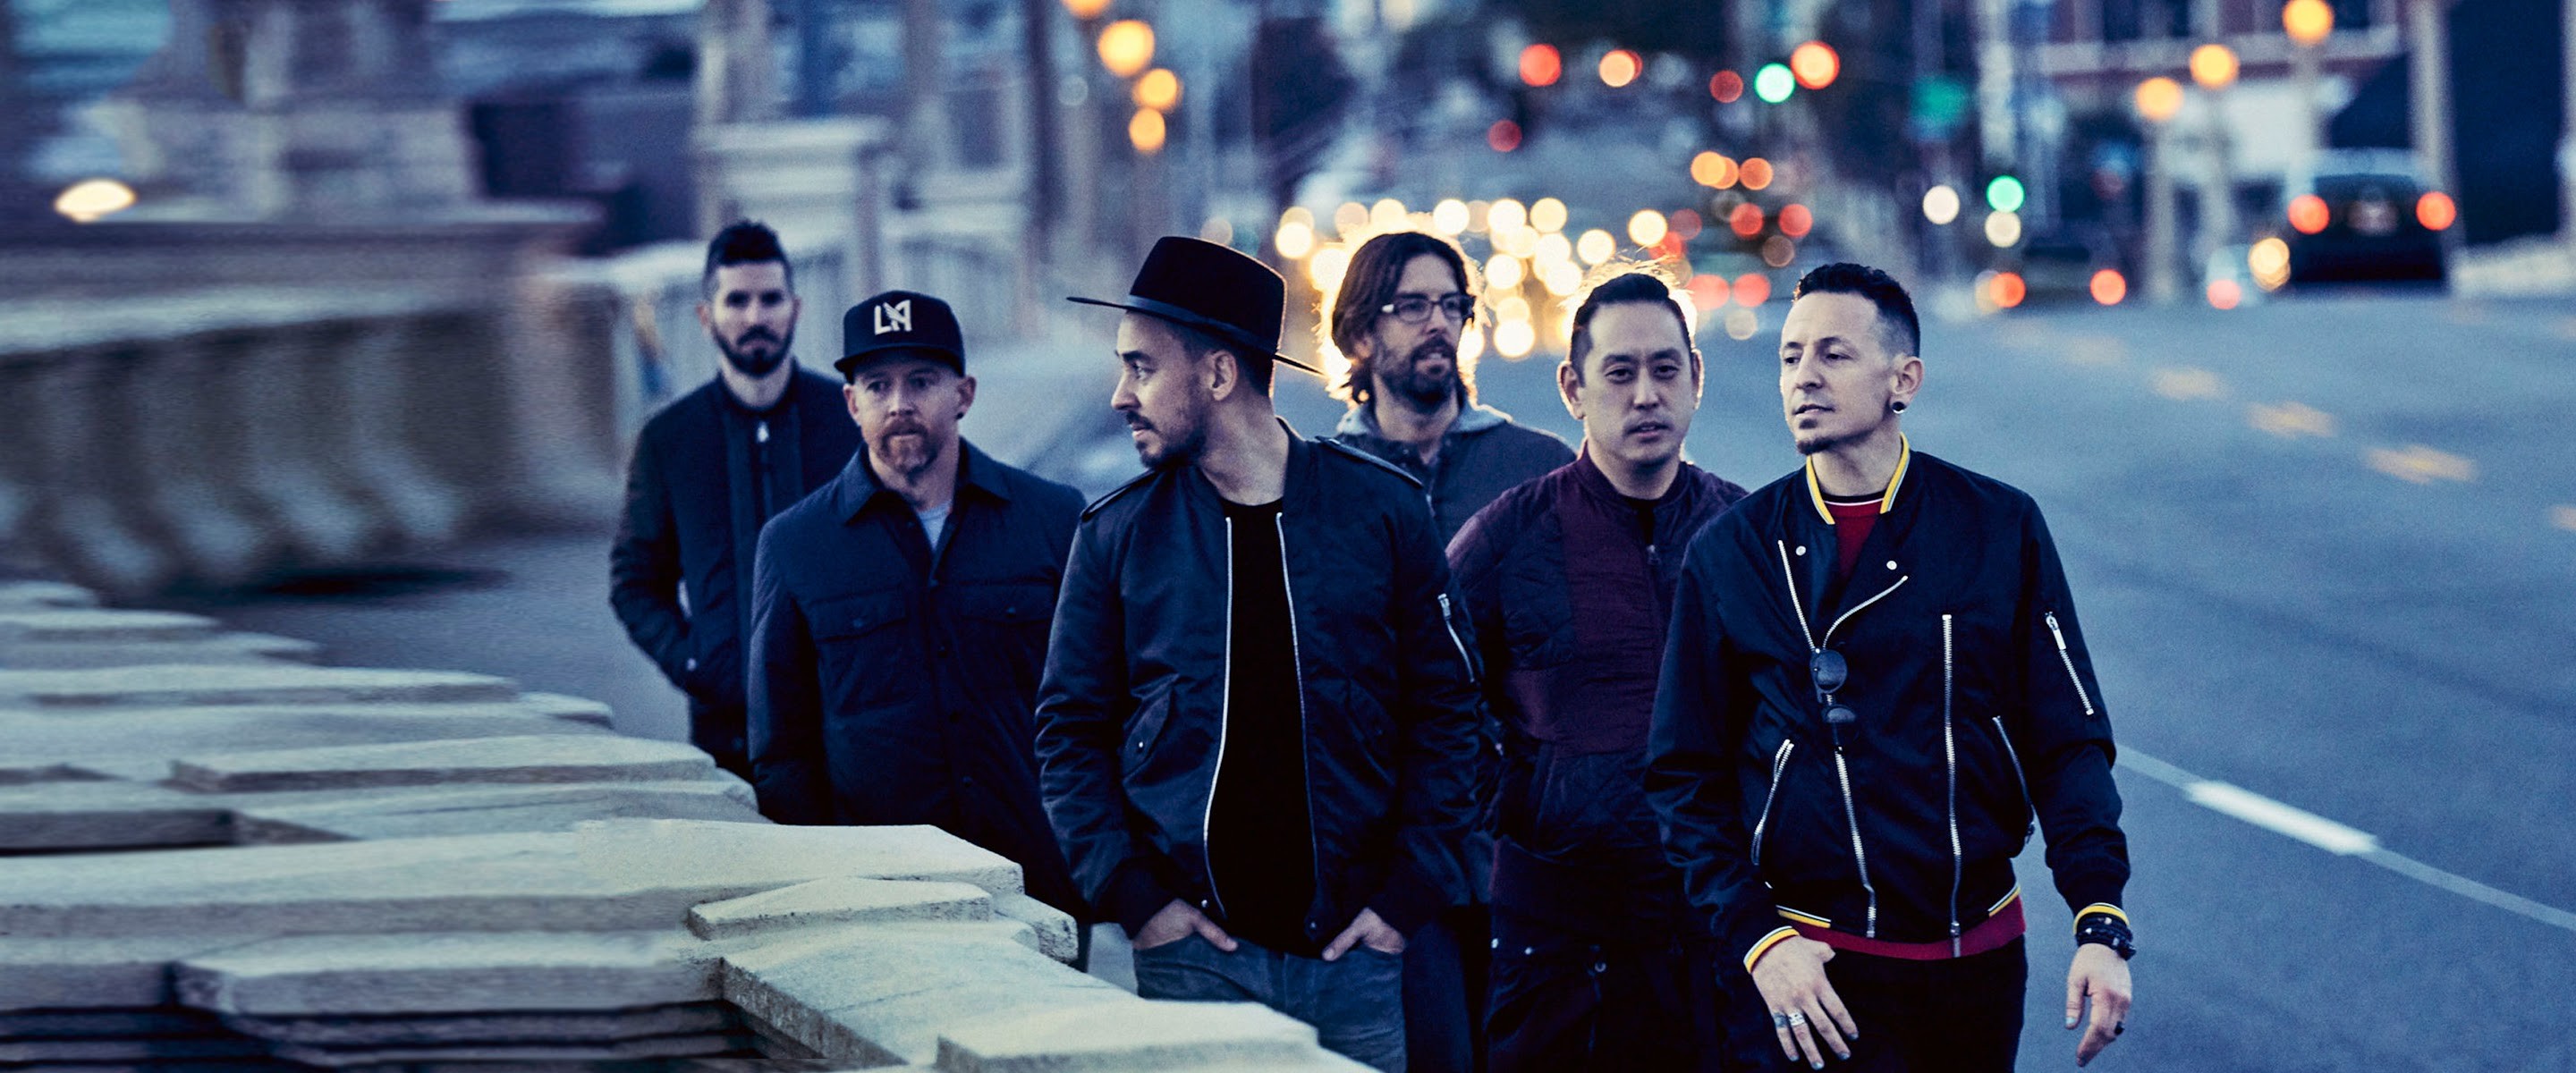 Linkin Park Chia Sẻ Về Sự Ảnh Hưởng Của Depeche Mode: “Cách Họ Kết Hợp Các Bài Hát Thật Độc Đáo Và Thú Vị”